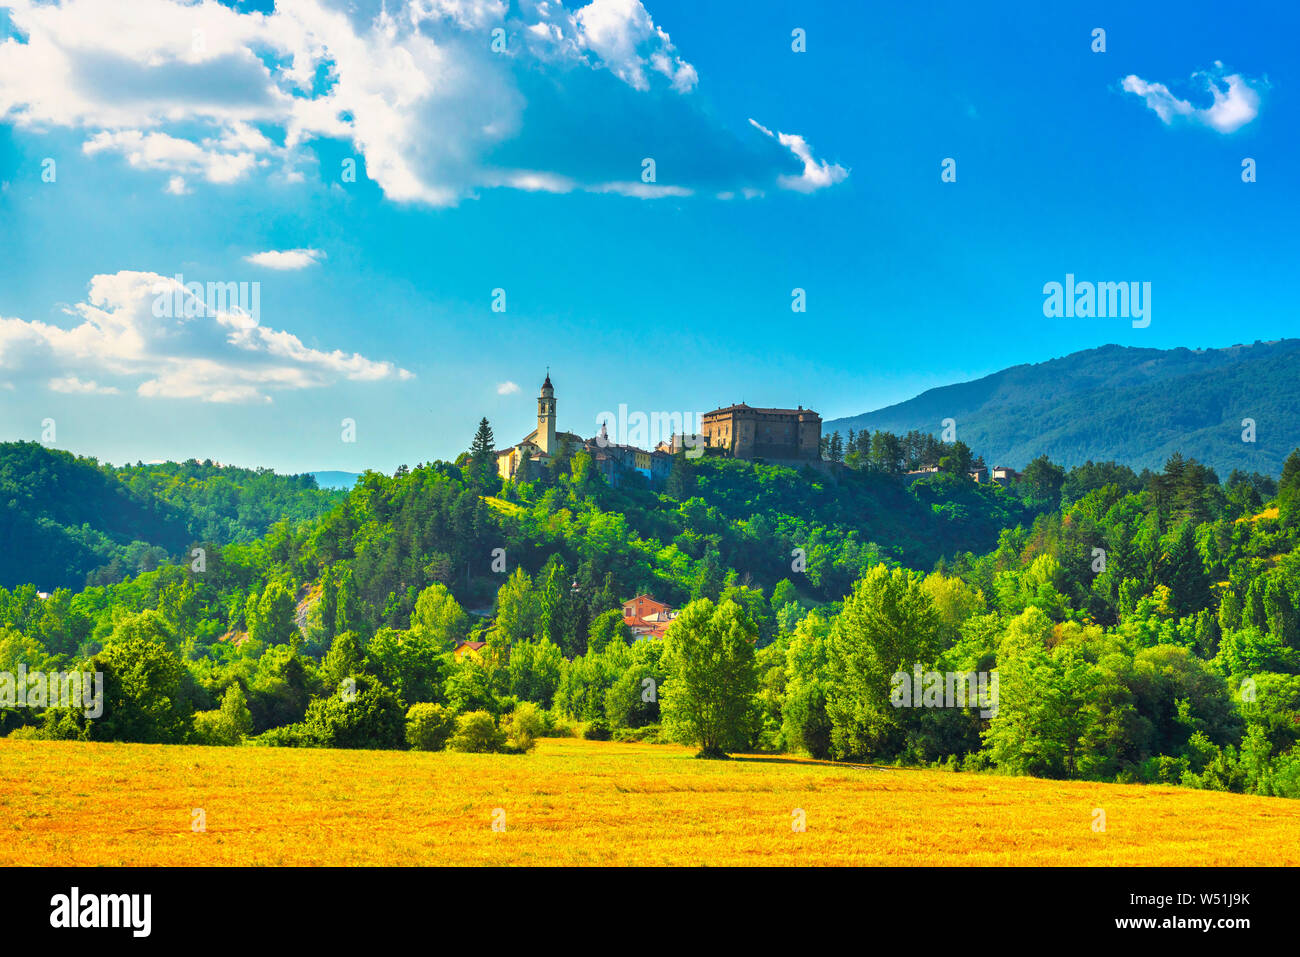 Compiano village médiéval, église et château dans la vallée du Taro, Parma, Italie Banque D'Images